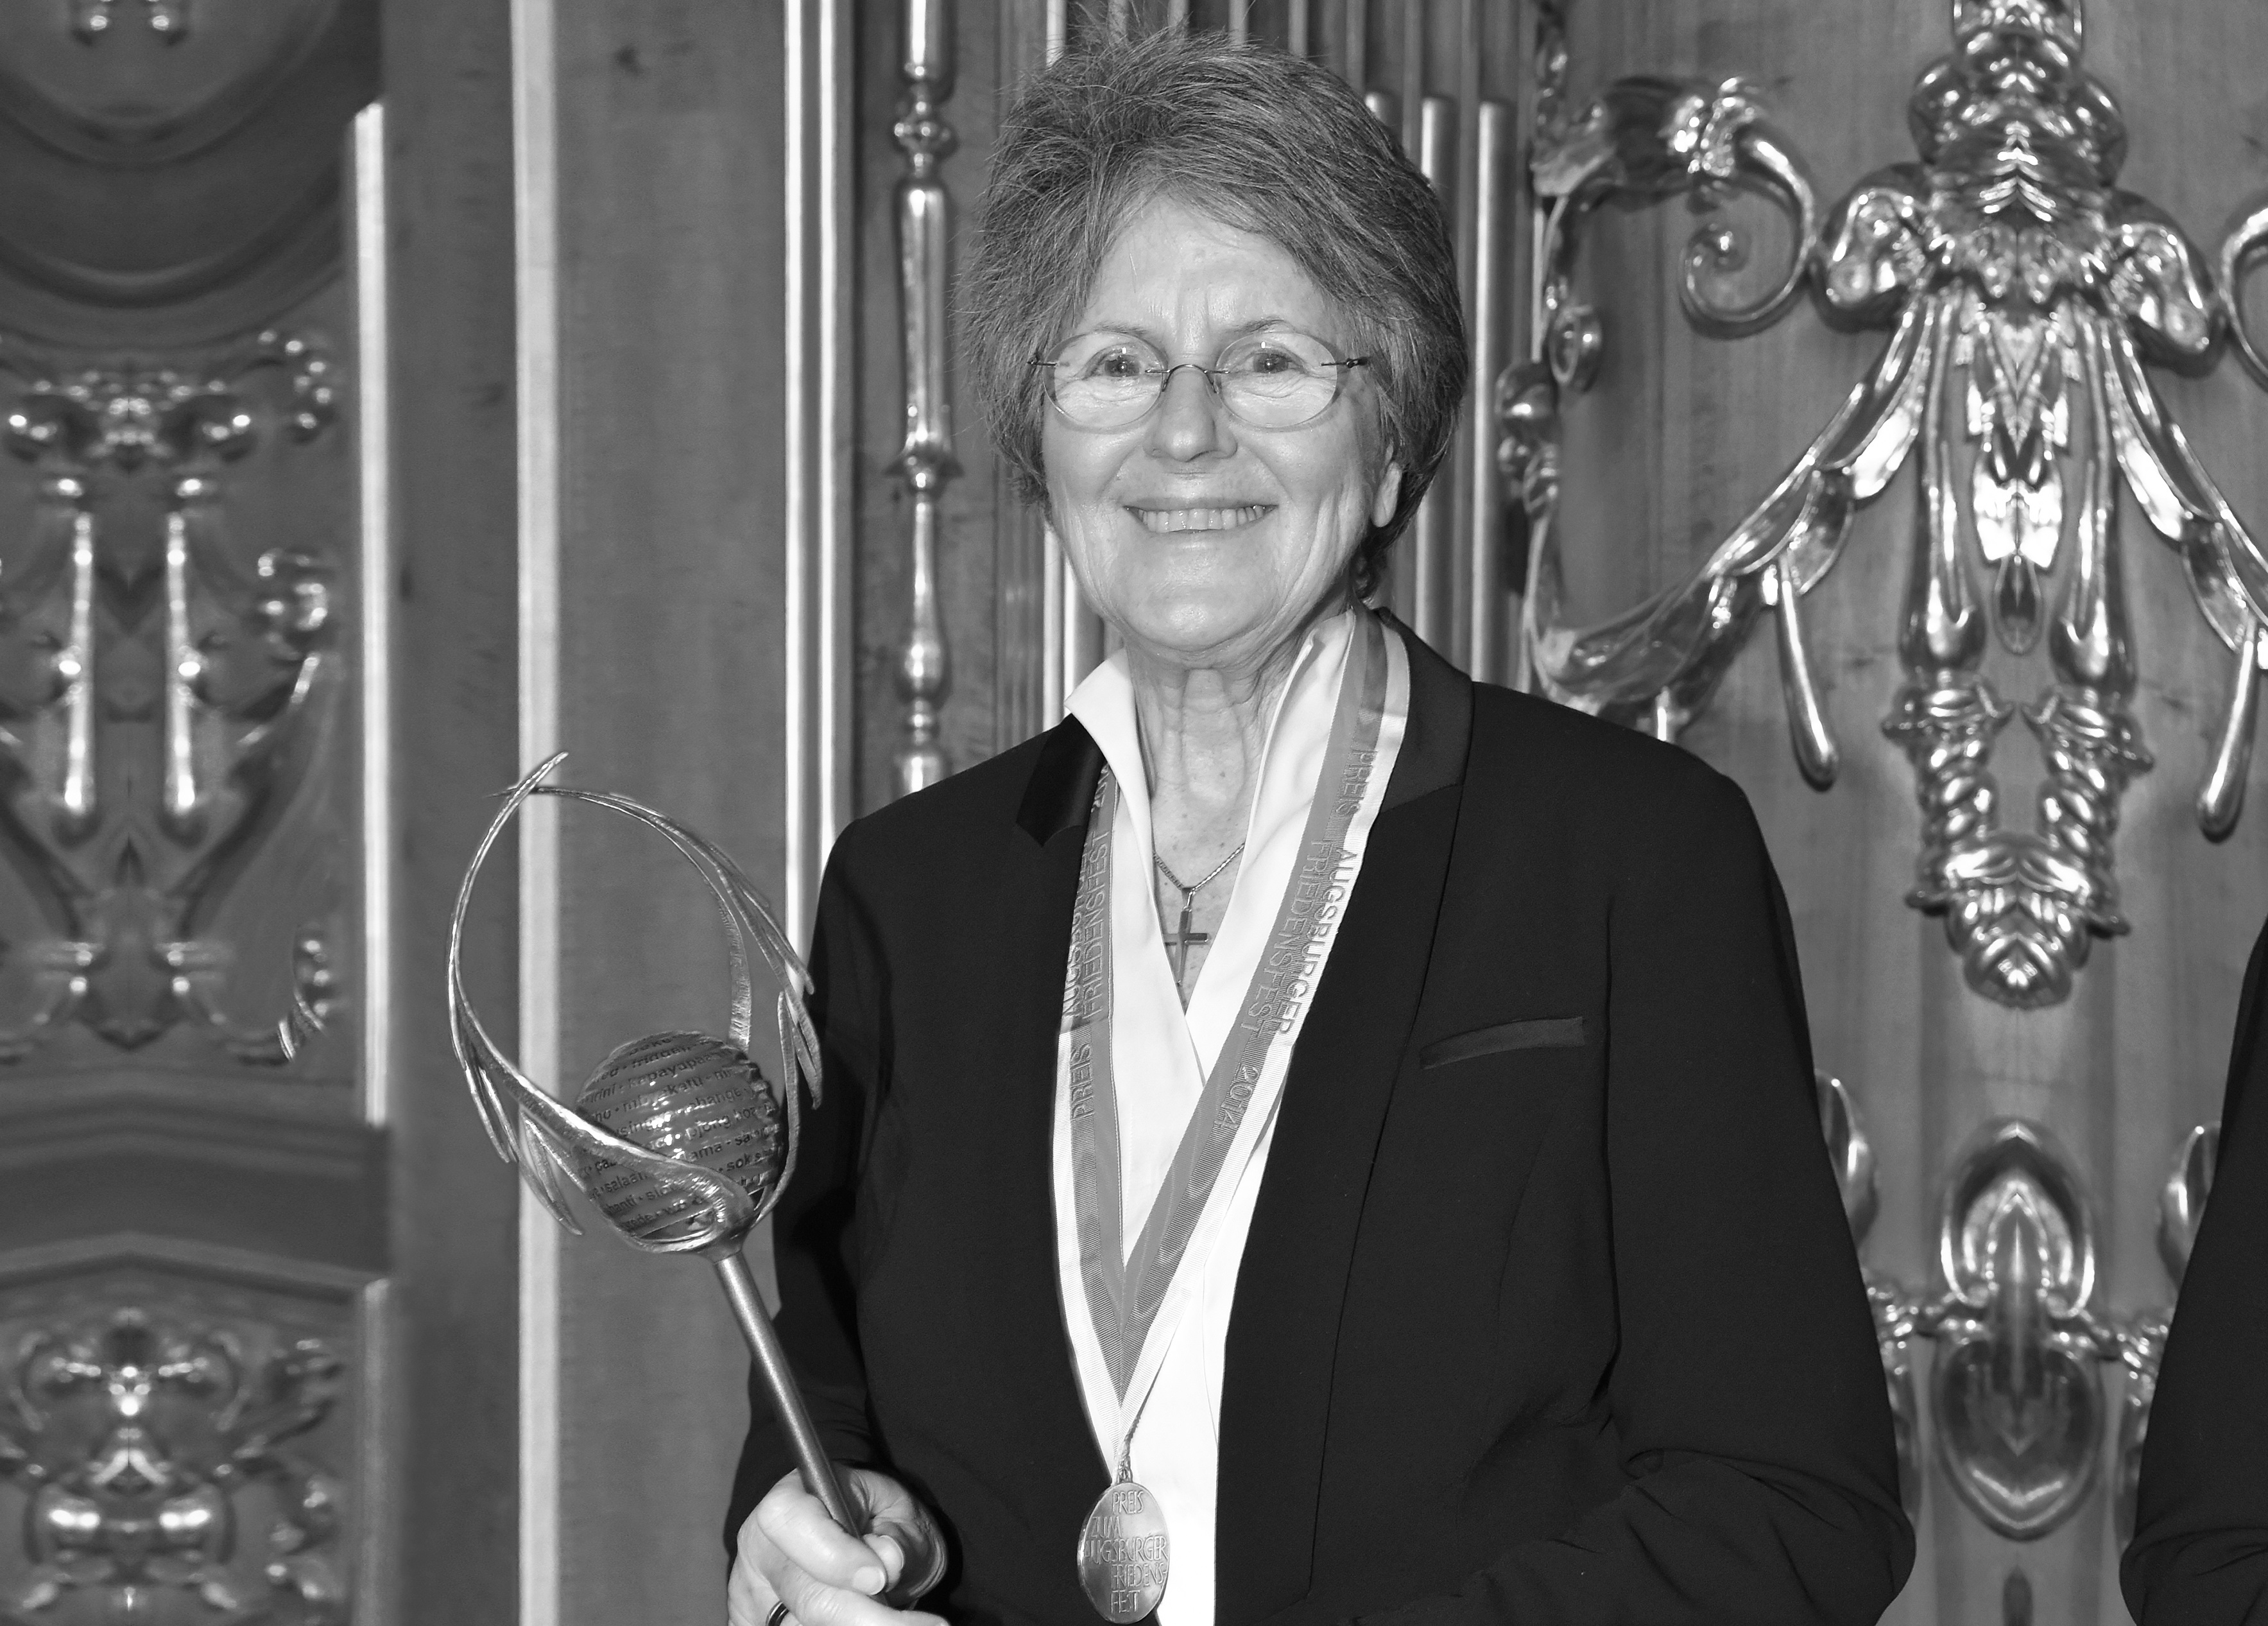 Schwarzweiß-Bild von Dr. Lea Ackermann. Sie hält den Friedenspreis der Stadt Augsburg in der Hand und hat eine Medaille umgehängt. Im Hintergrund sind goldene Ornamente an einer Holzwand zu sehen.